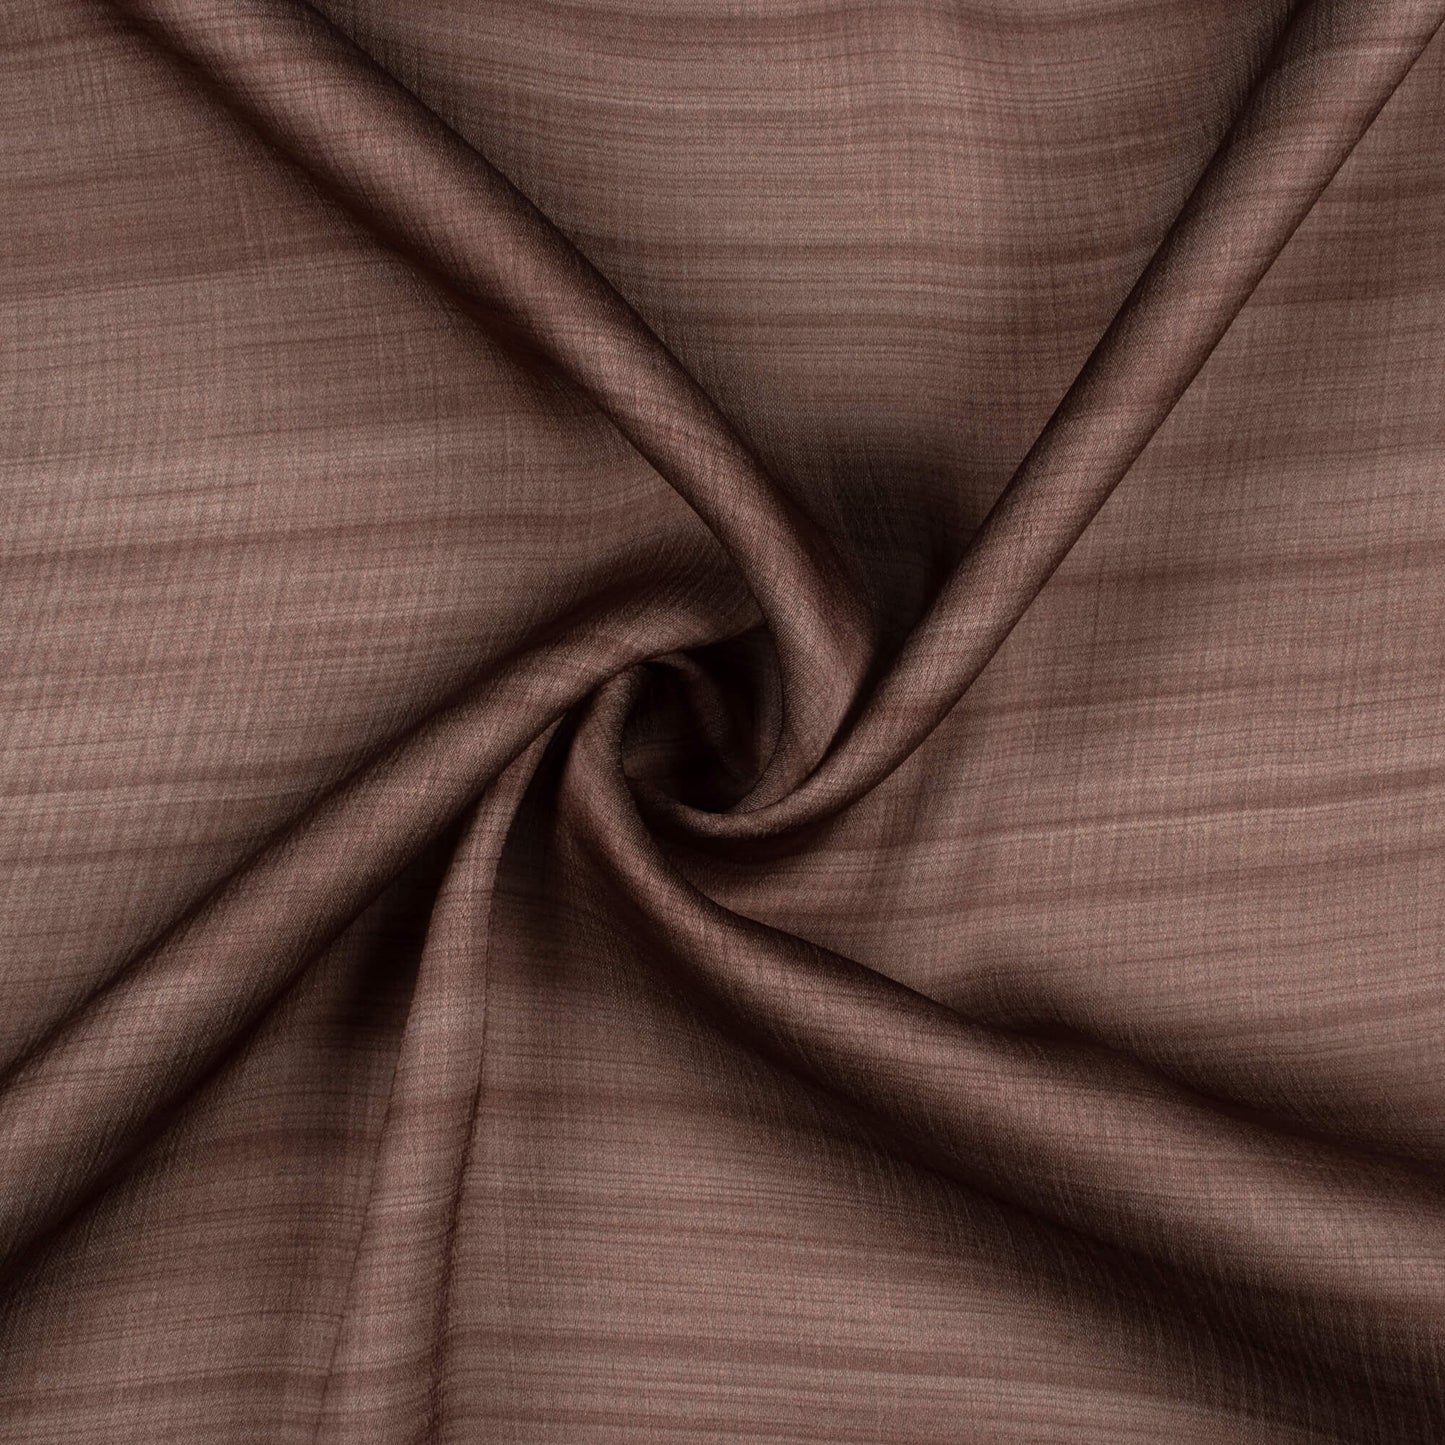 Walnut Brown Texture Pattern Digital Print Chiffon Satin Fabric